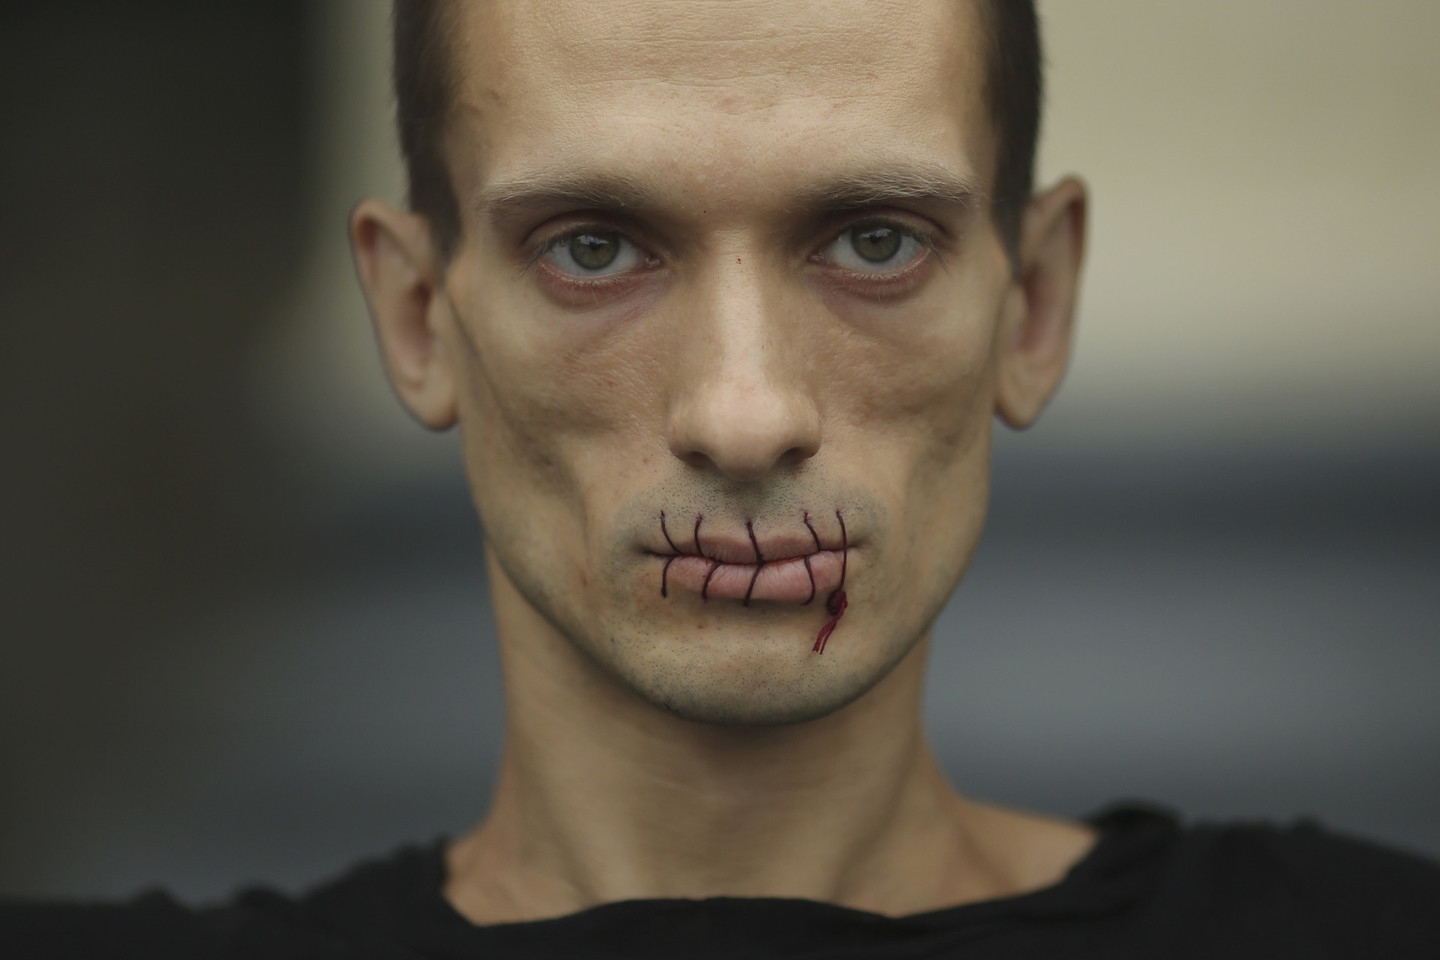 Protestuodamas prieš piliečių laisvės suvaržymus P.Pavlenskis buvo užsisiuvęs burną.<br>Reuters nuotr.